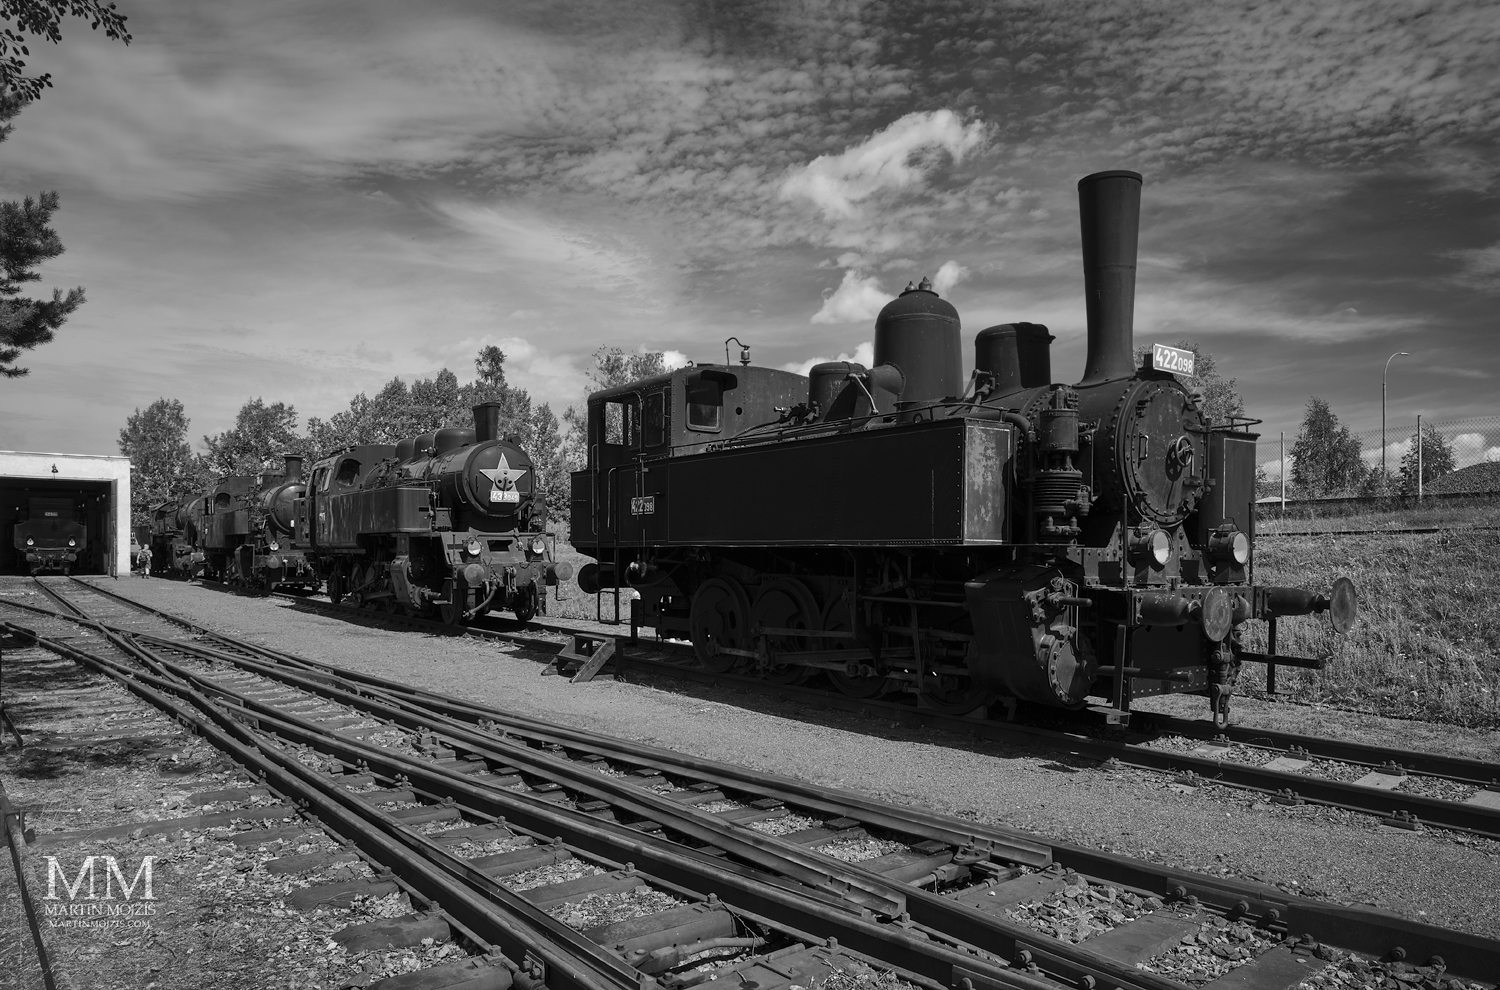 Parní lokomotivy na kolejích v letním odpoledni. Umělecká černobílá fotografie s názvem KLID LETNÍHO ODPOLEDNE II. Fotograf Martin Mojžíš.